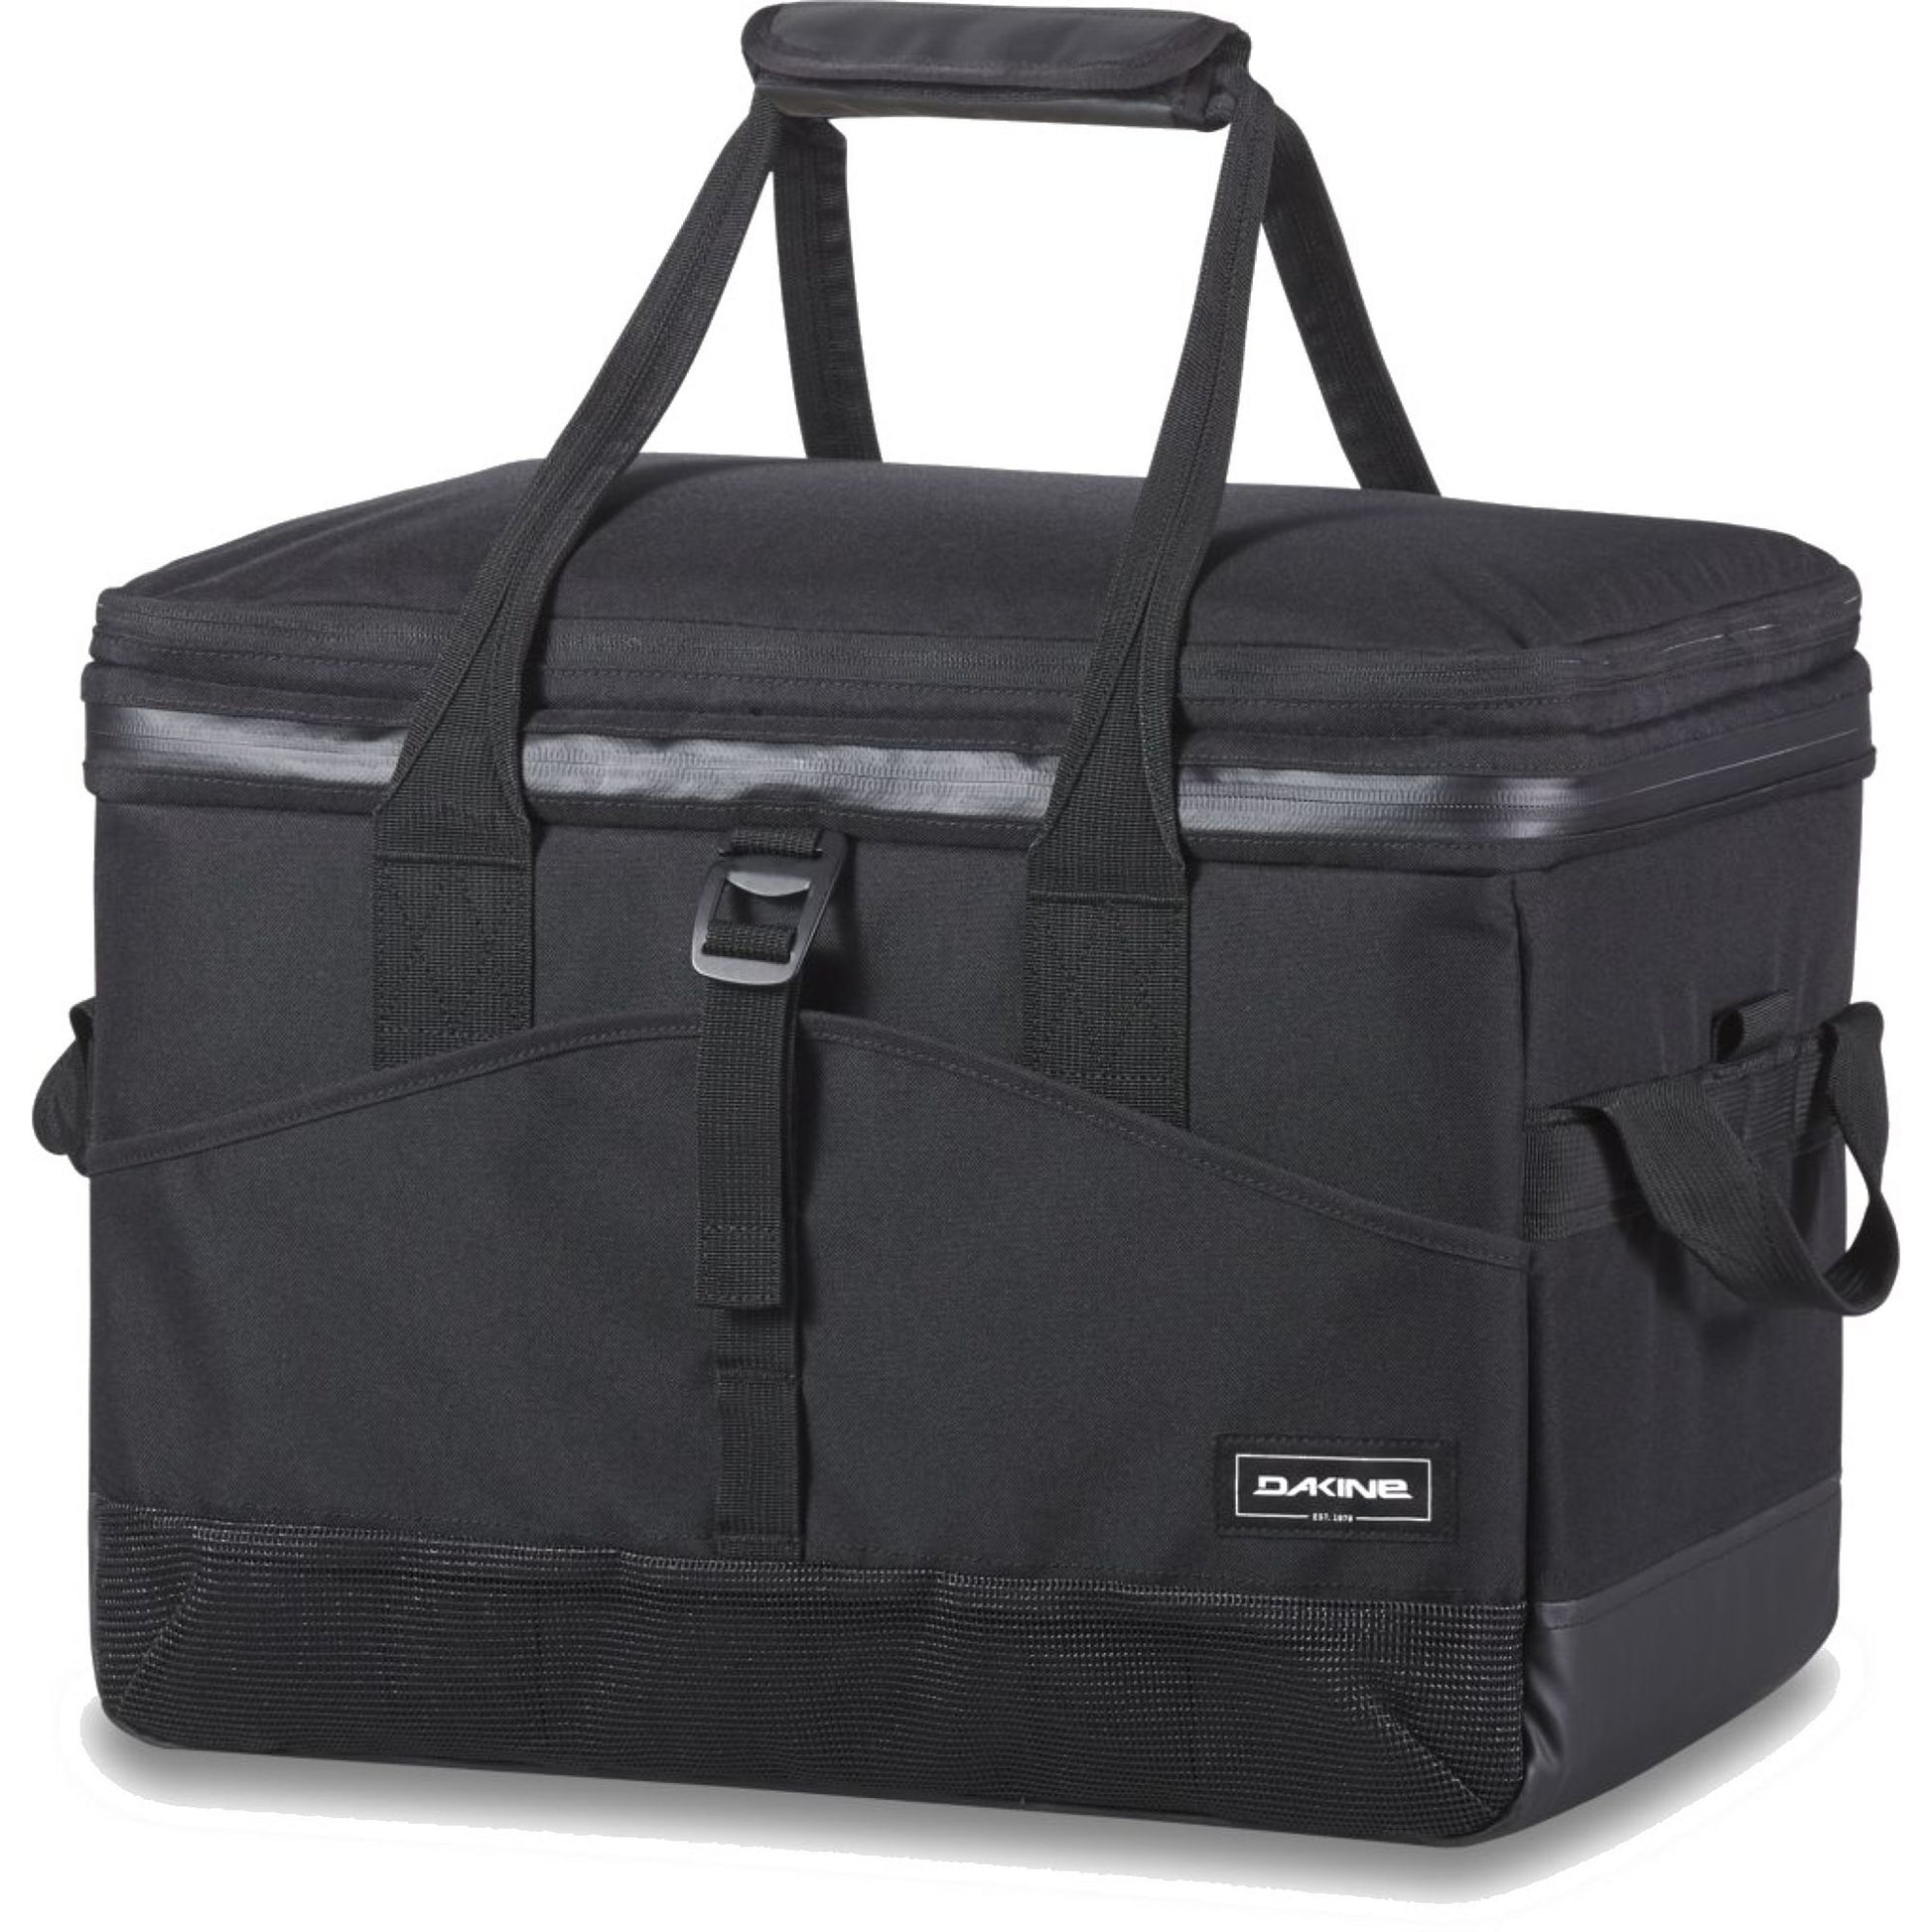 Dakine Cooler 50L Black OS Travel Bags